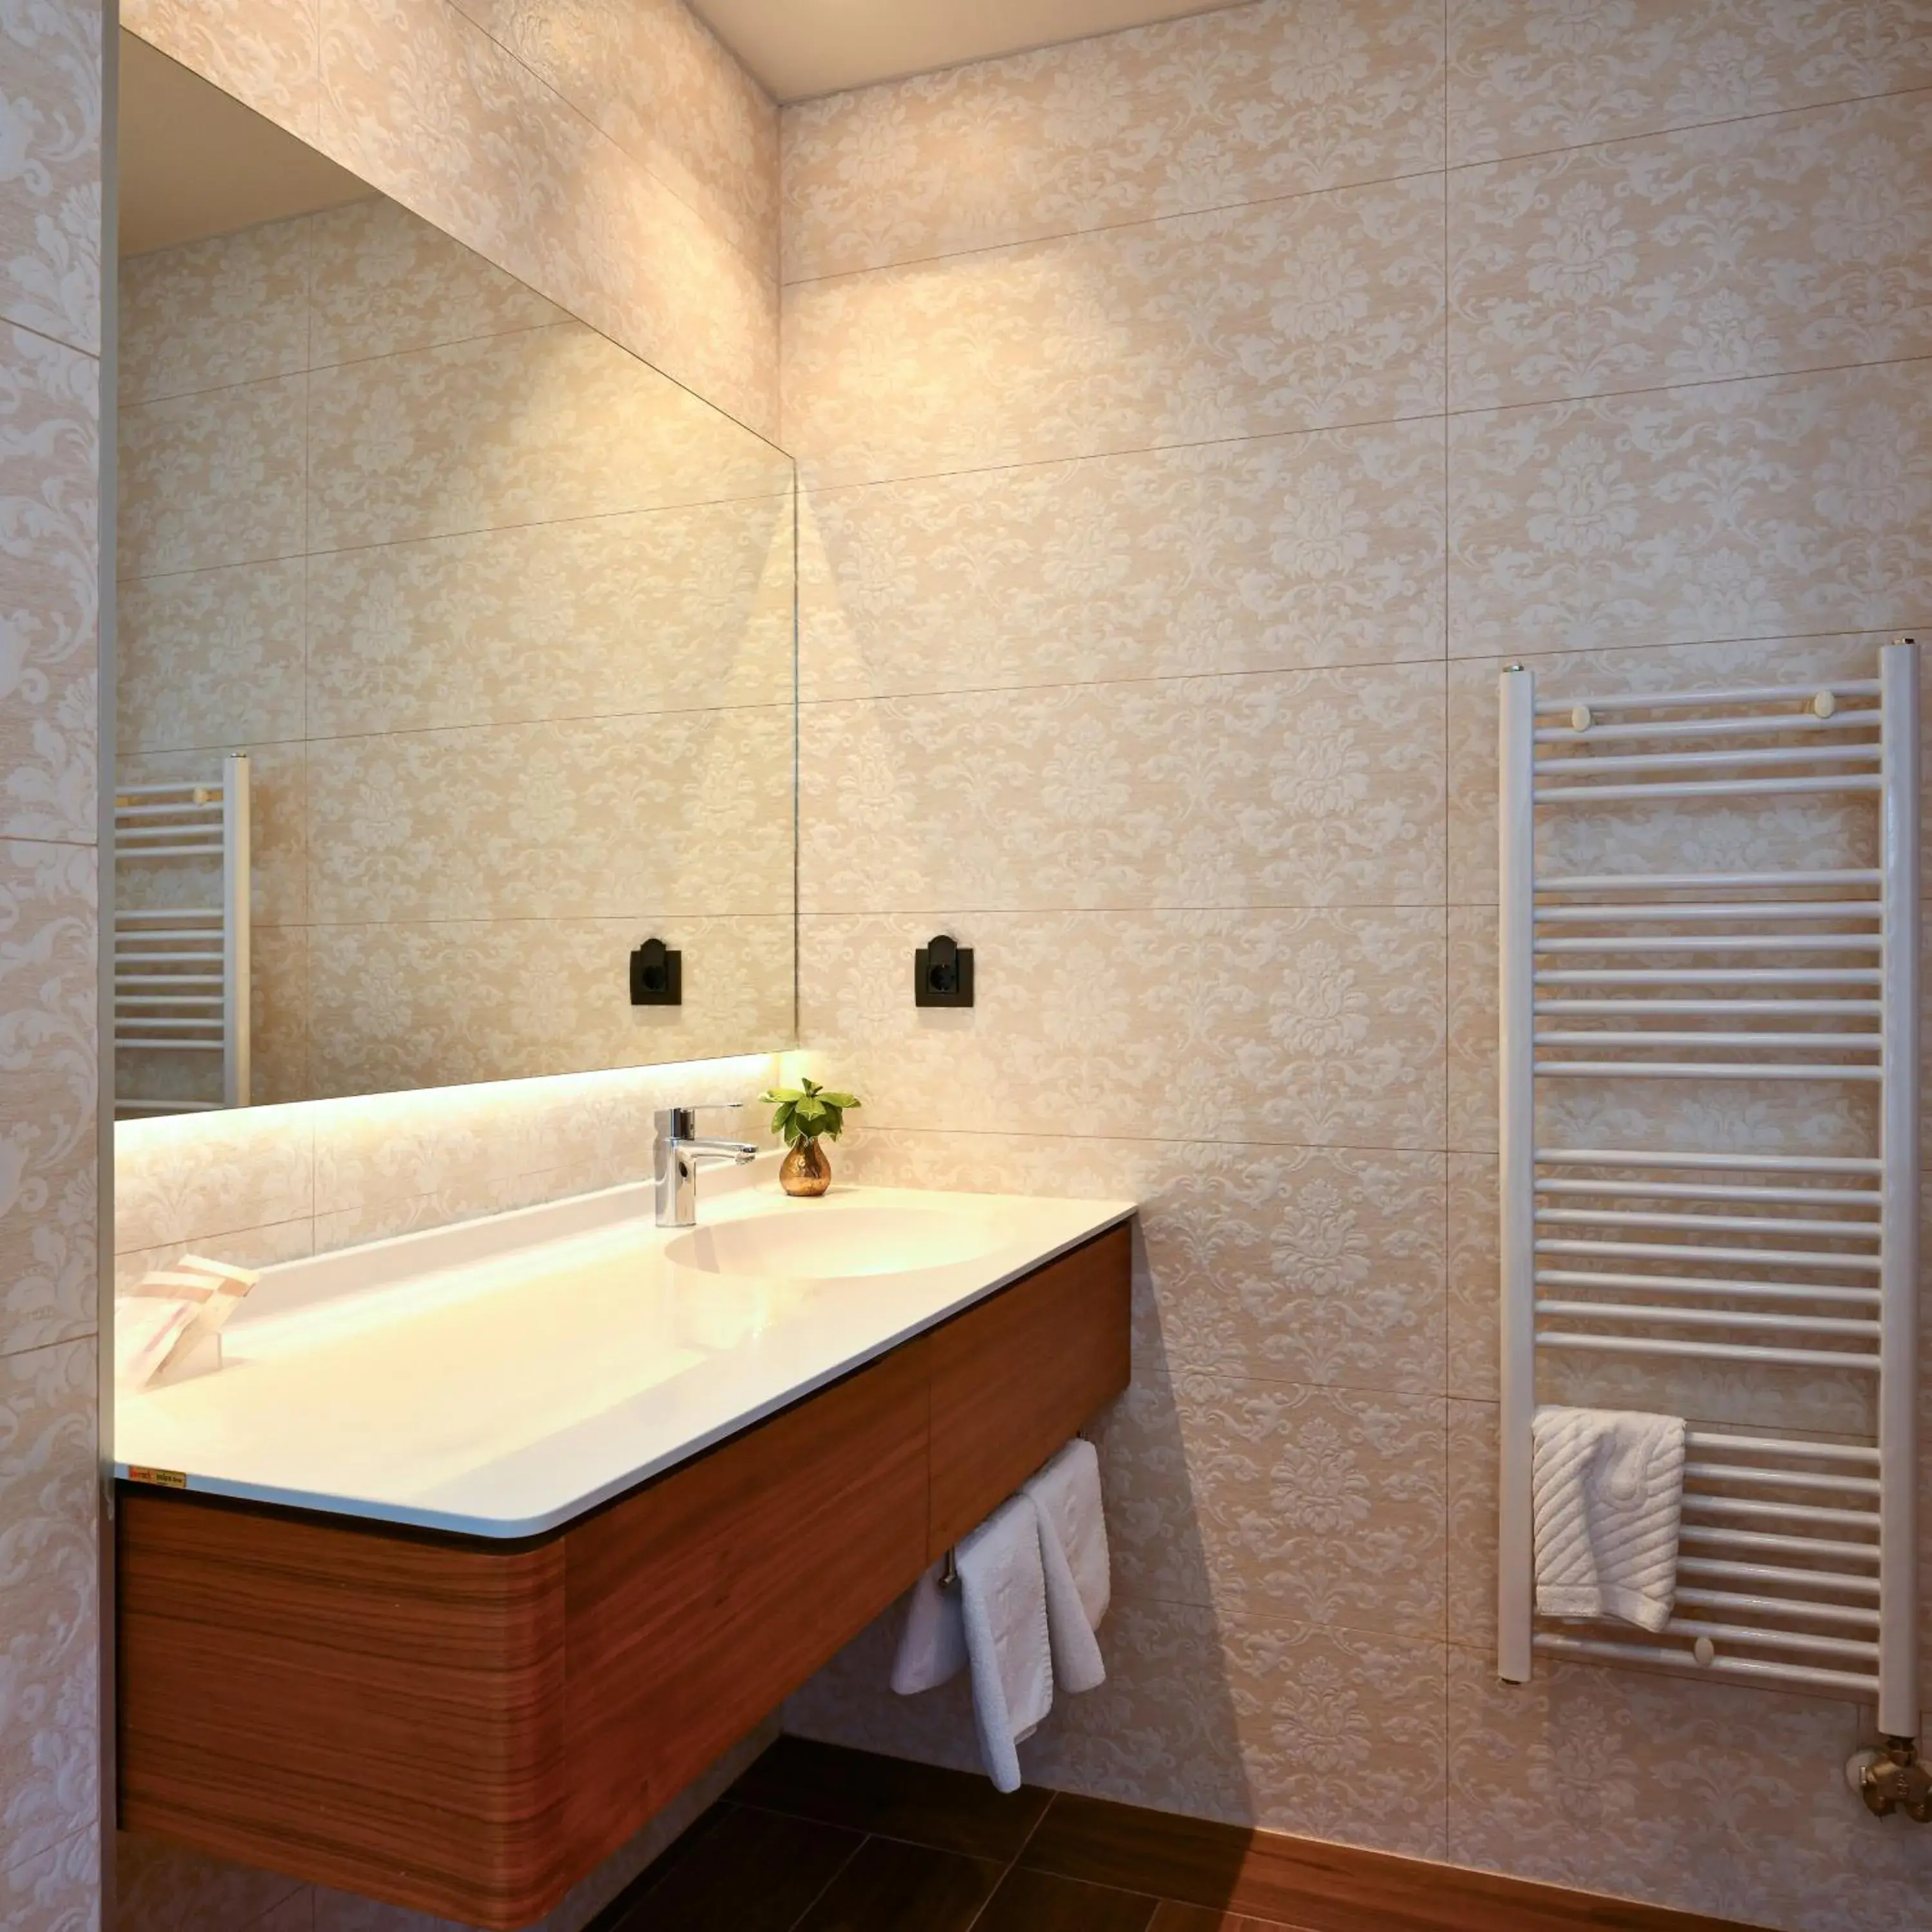 Bathroom in Heritage Hotel Krone